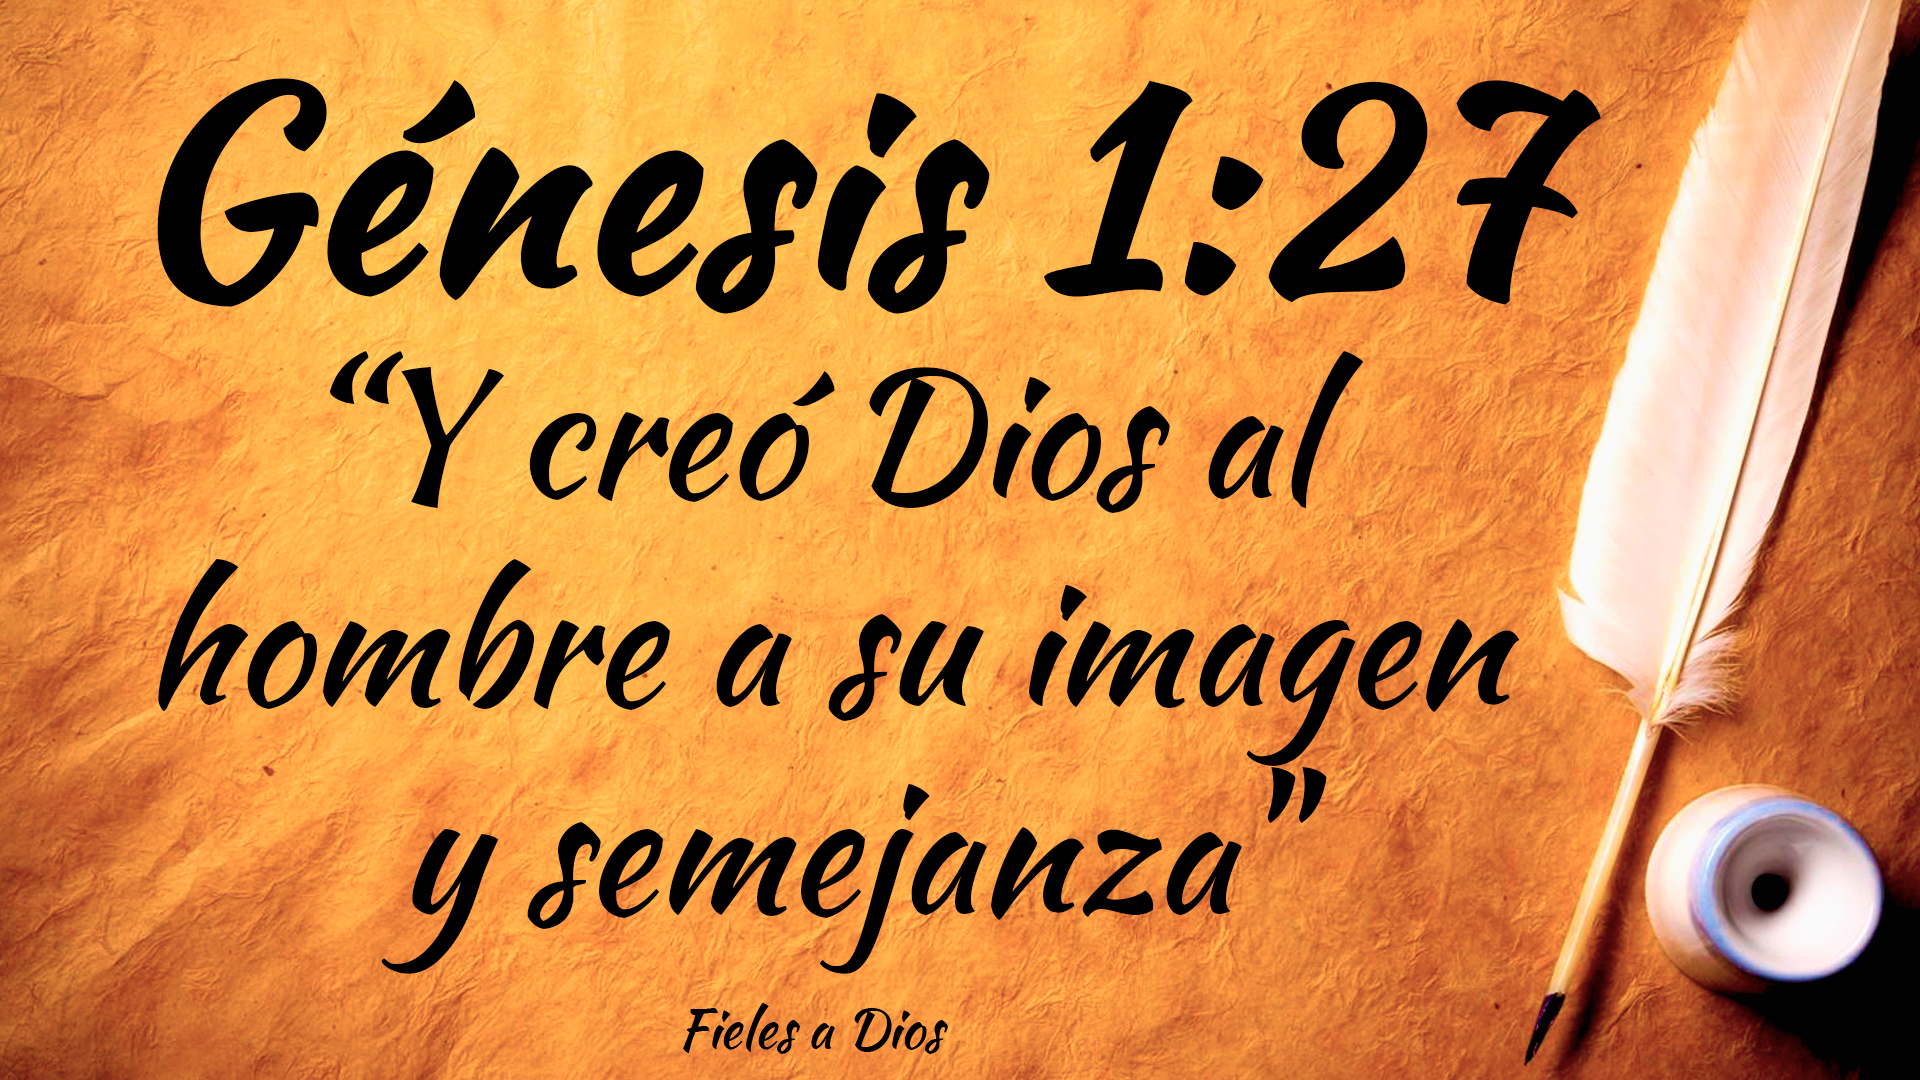 Génesis 1:27 - "Y creó Dios al Hombre a su Imagen y Semejanza" | Fieles